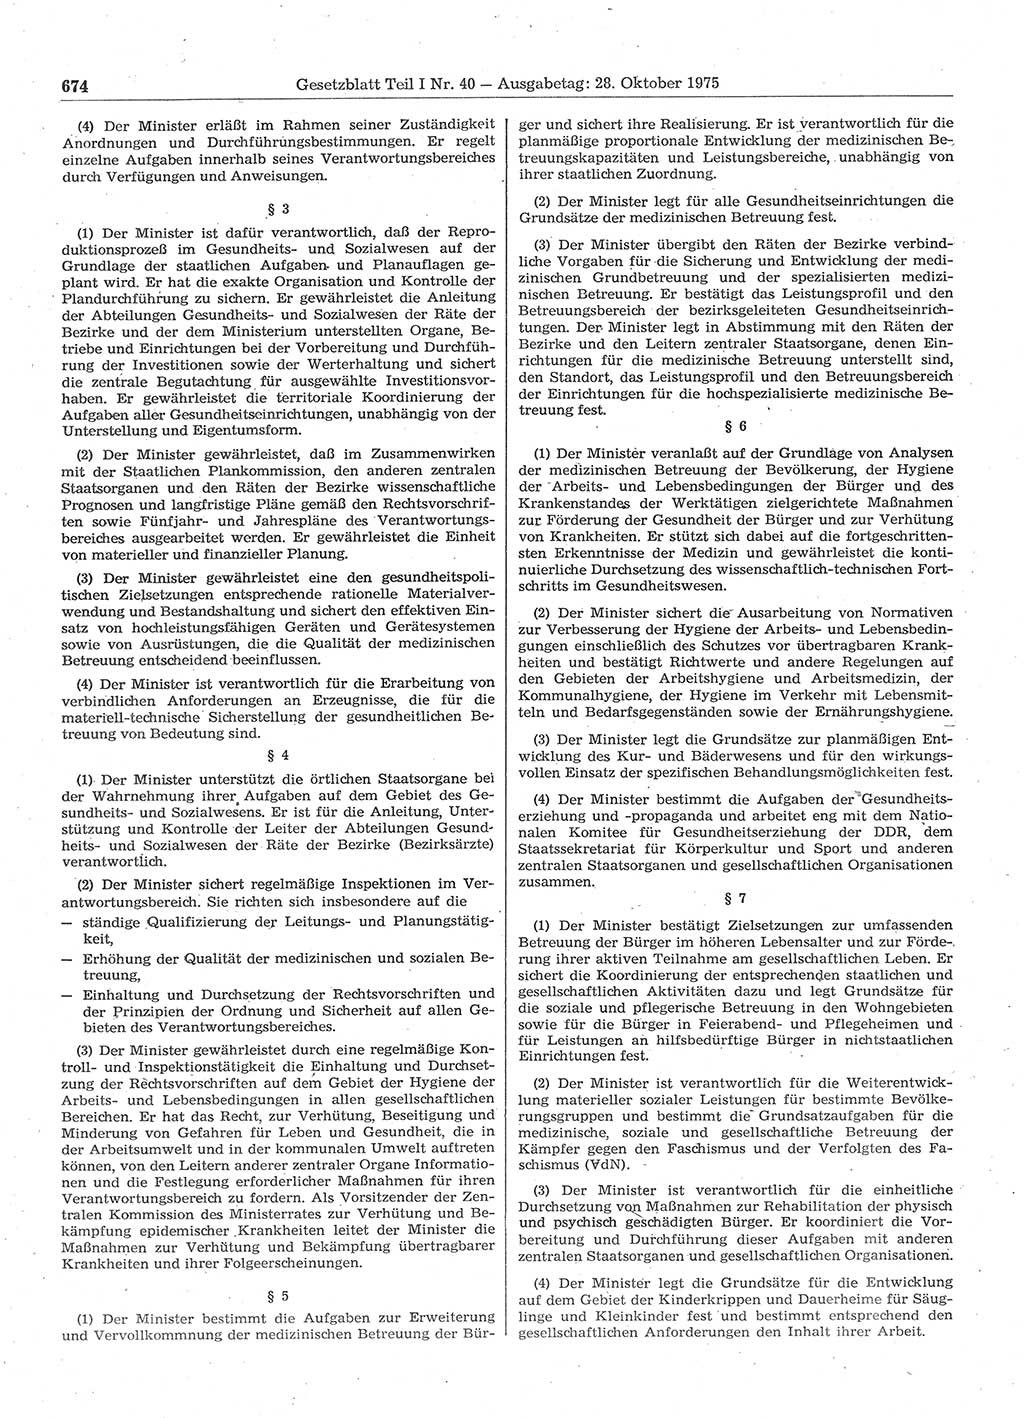 Gesetzblatt (GBl.) der Deutschen Demokratischen Republik (DDR) Teil Ⅰ 1975, Seite 674 (GBl. DDR Ⅰ 1975, S. 674)